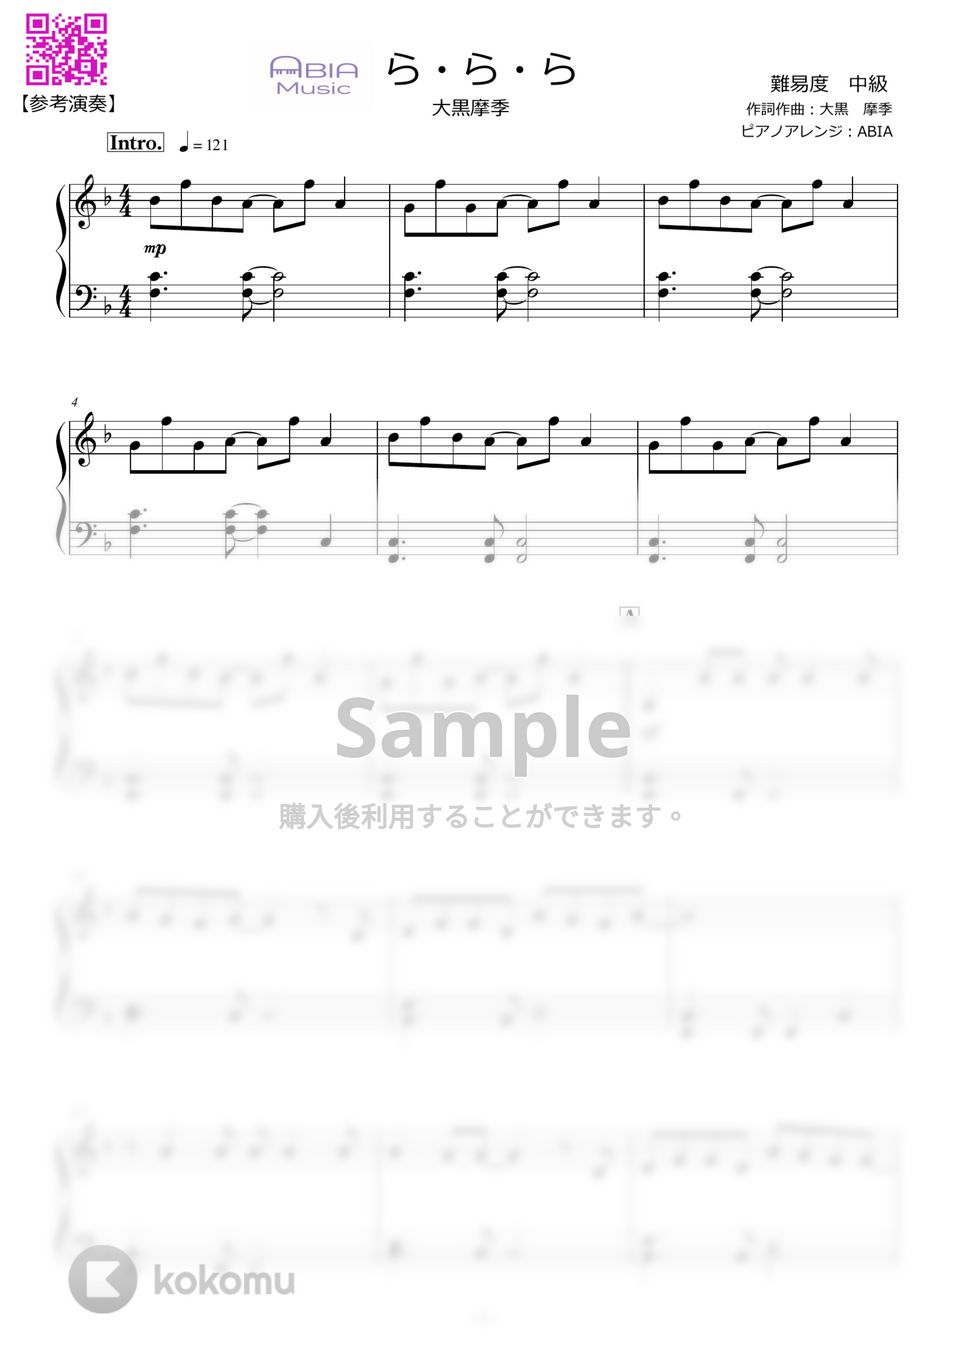 大黒摩季 - ら・ら・ら by ABIA Music